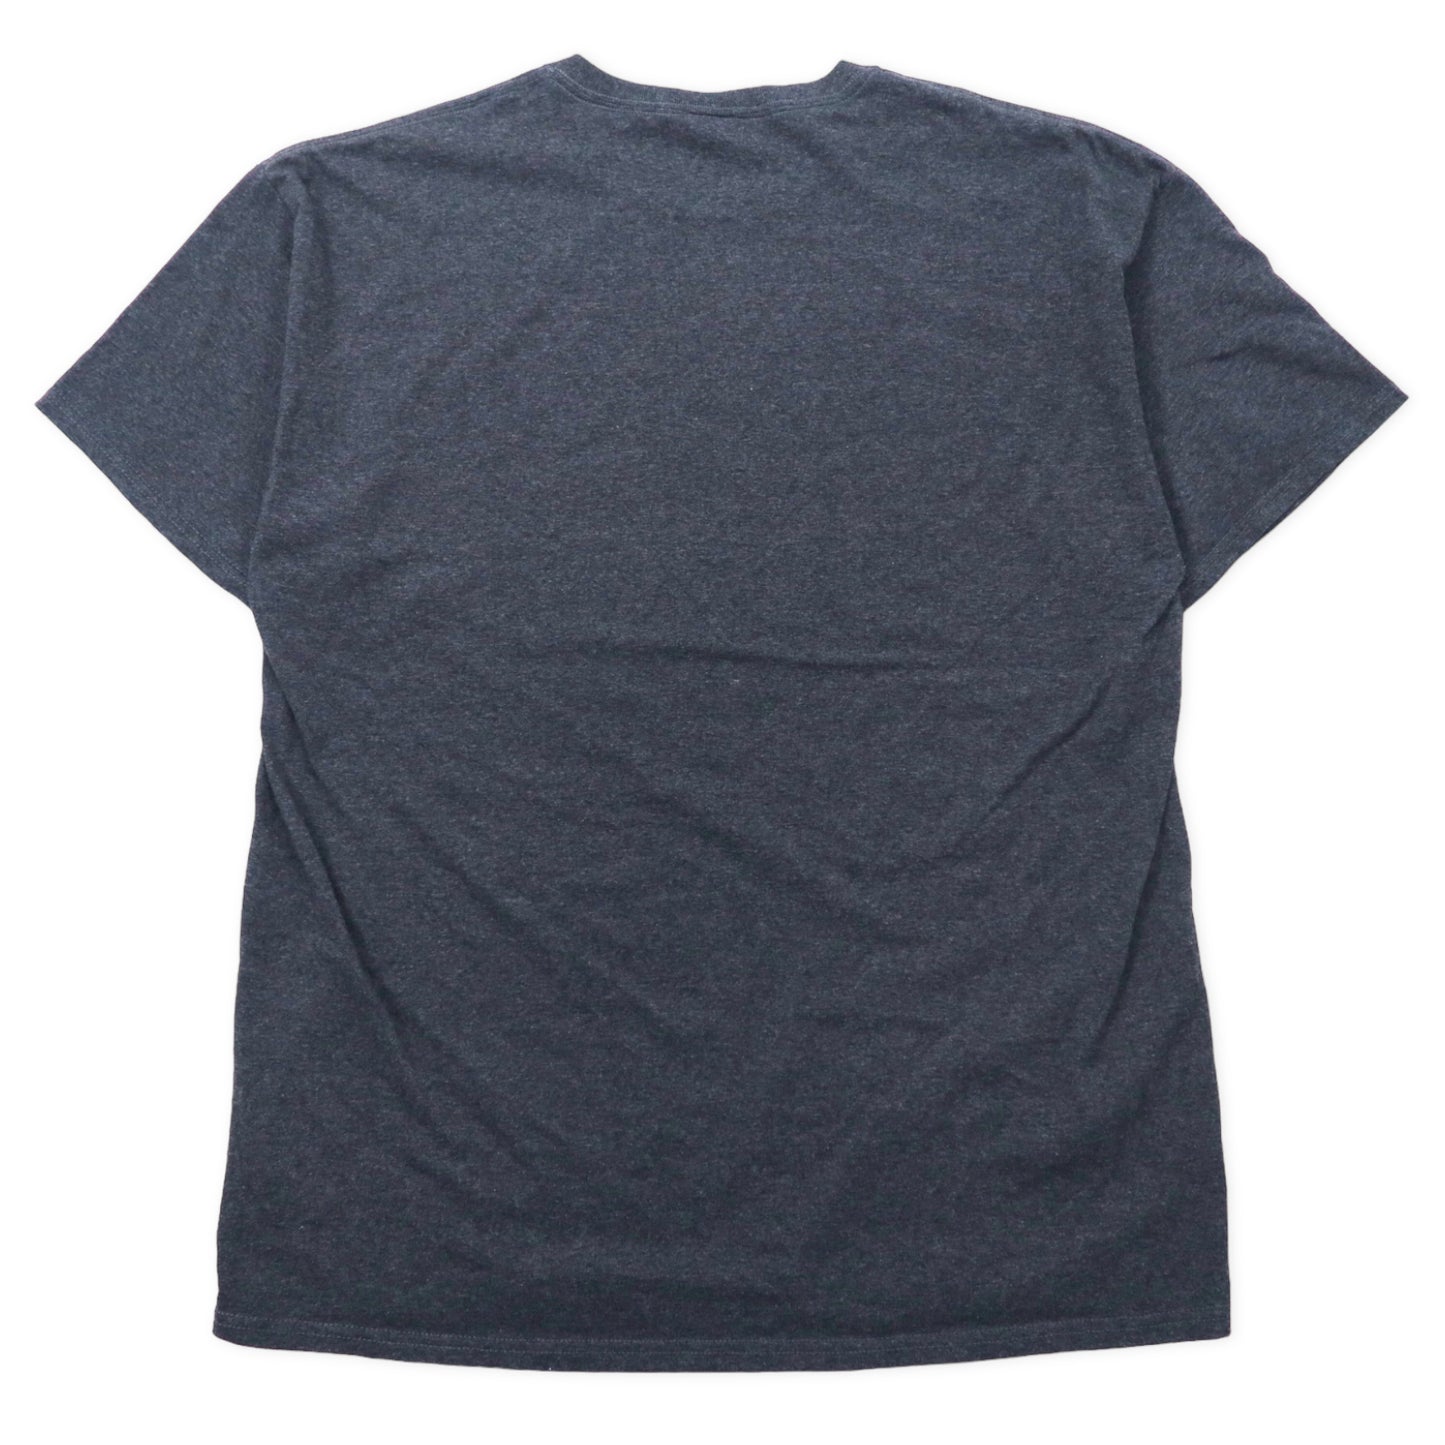 INDEPENDENCE MISSOURI カレッジプリント Tシャツ XL グレー コットン